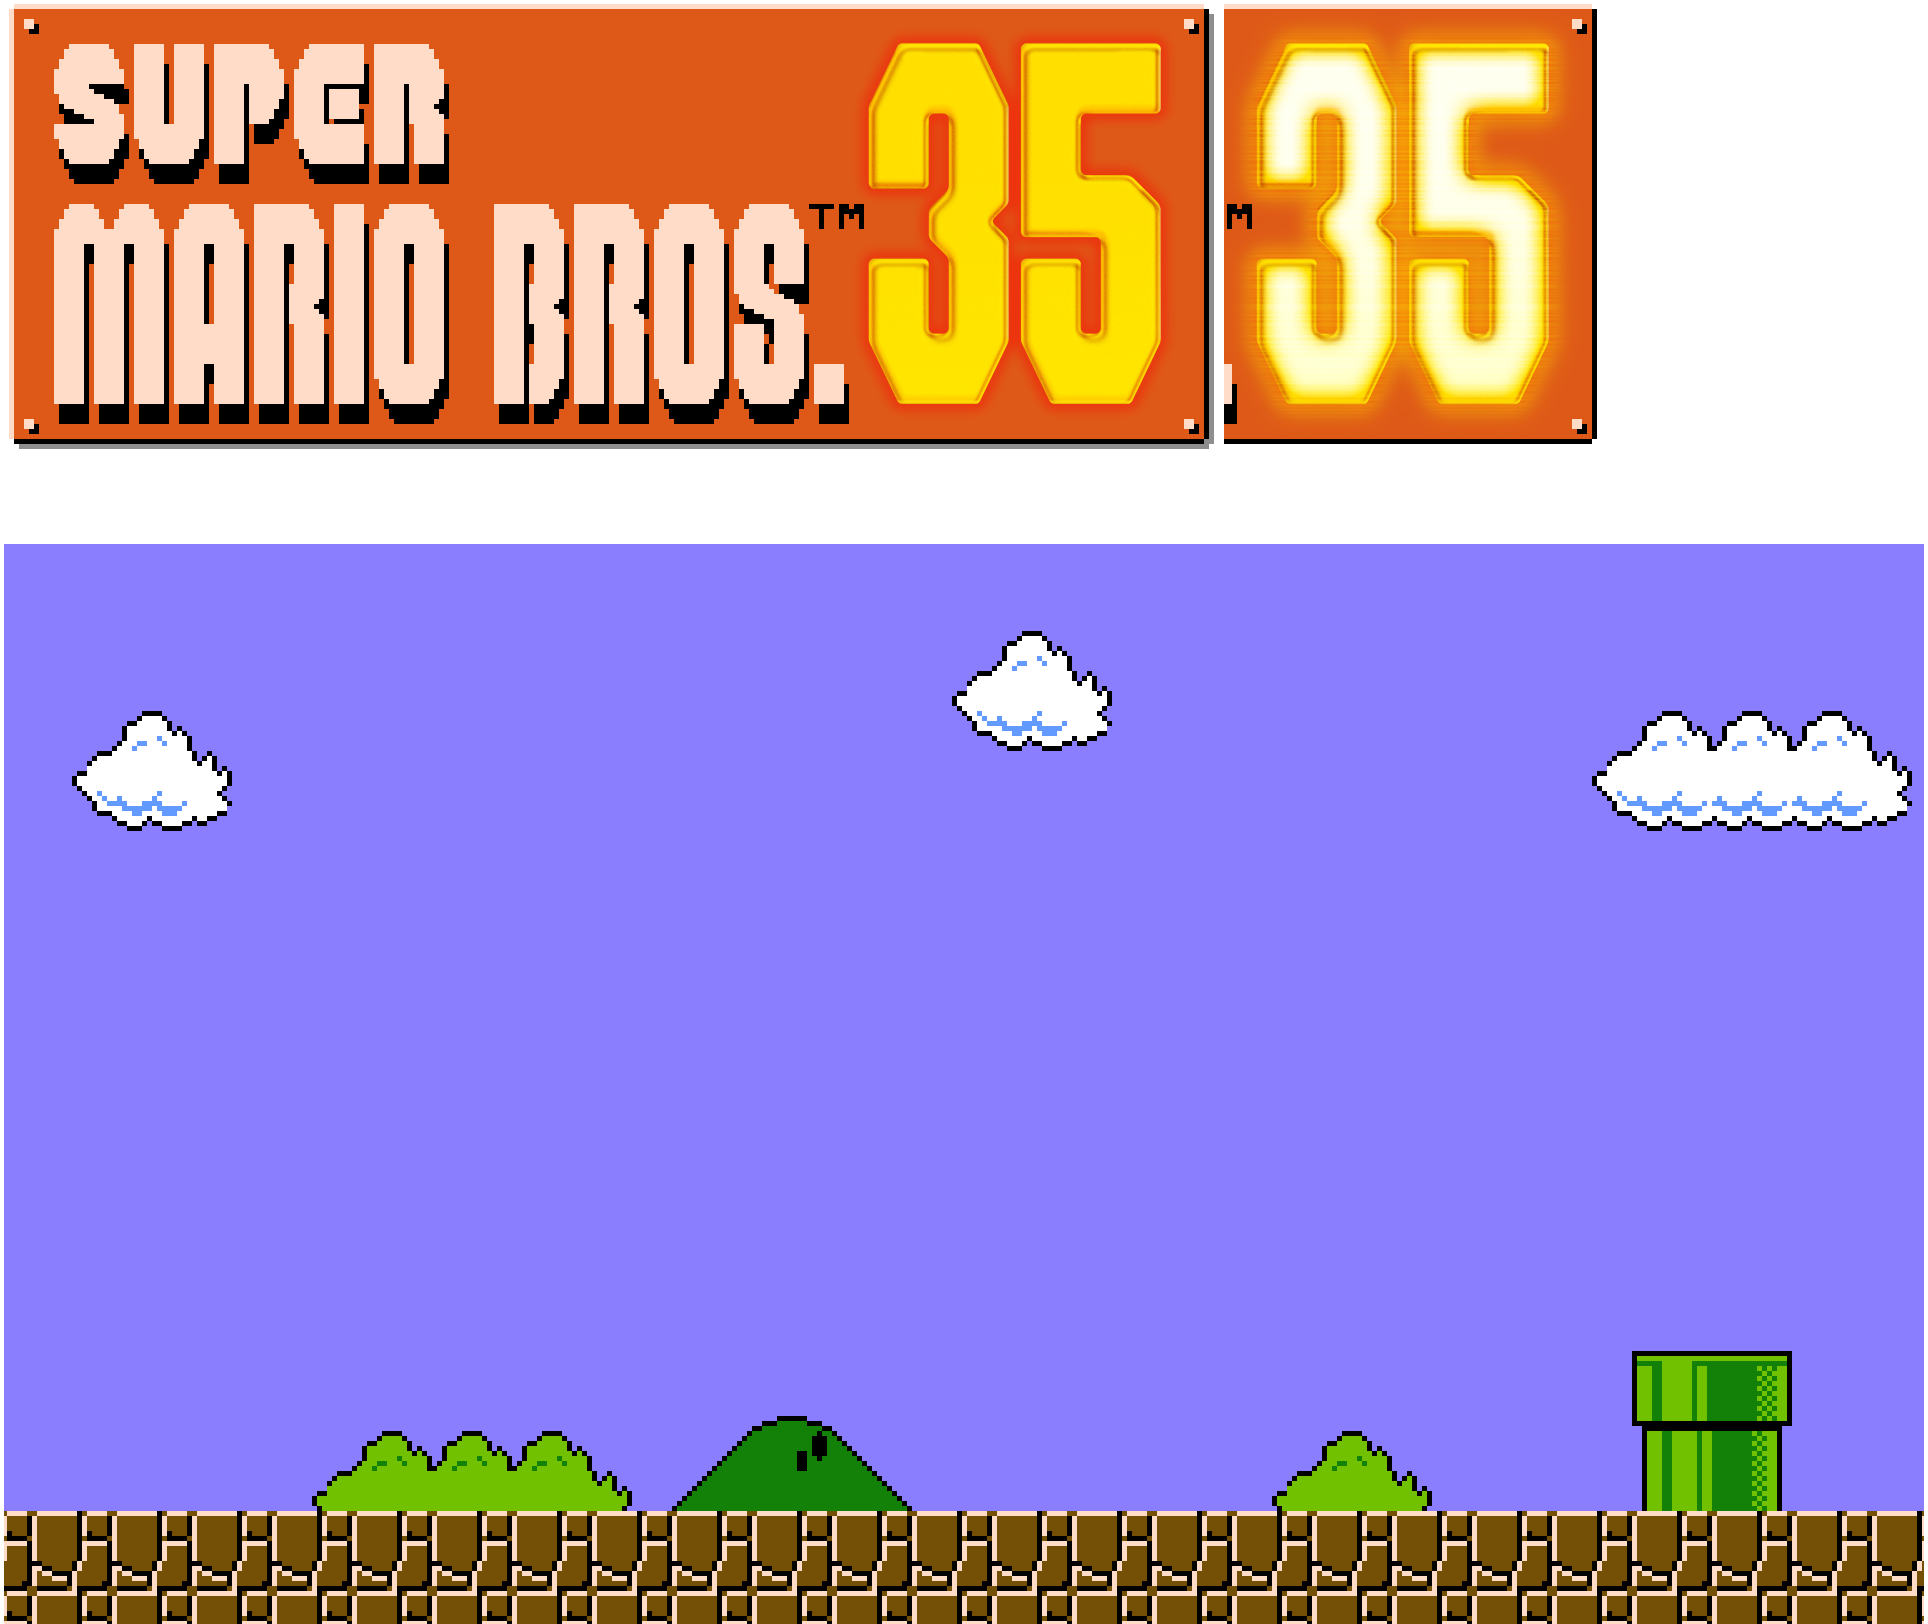 Super Mario Bros. 35 - Title